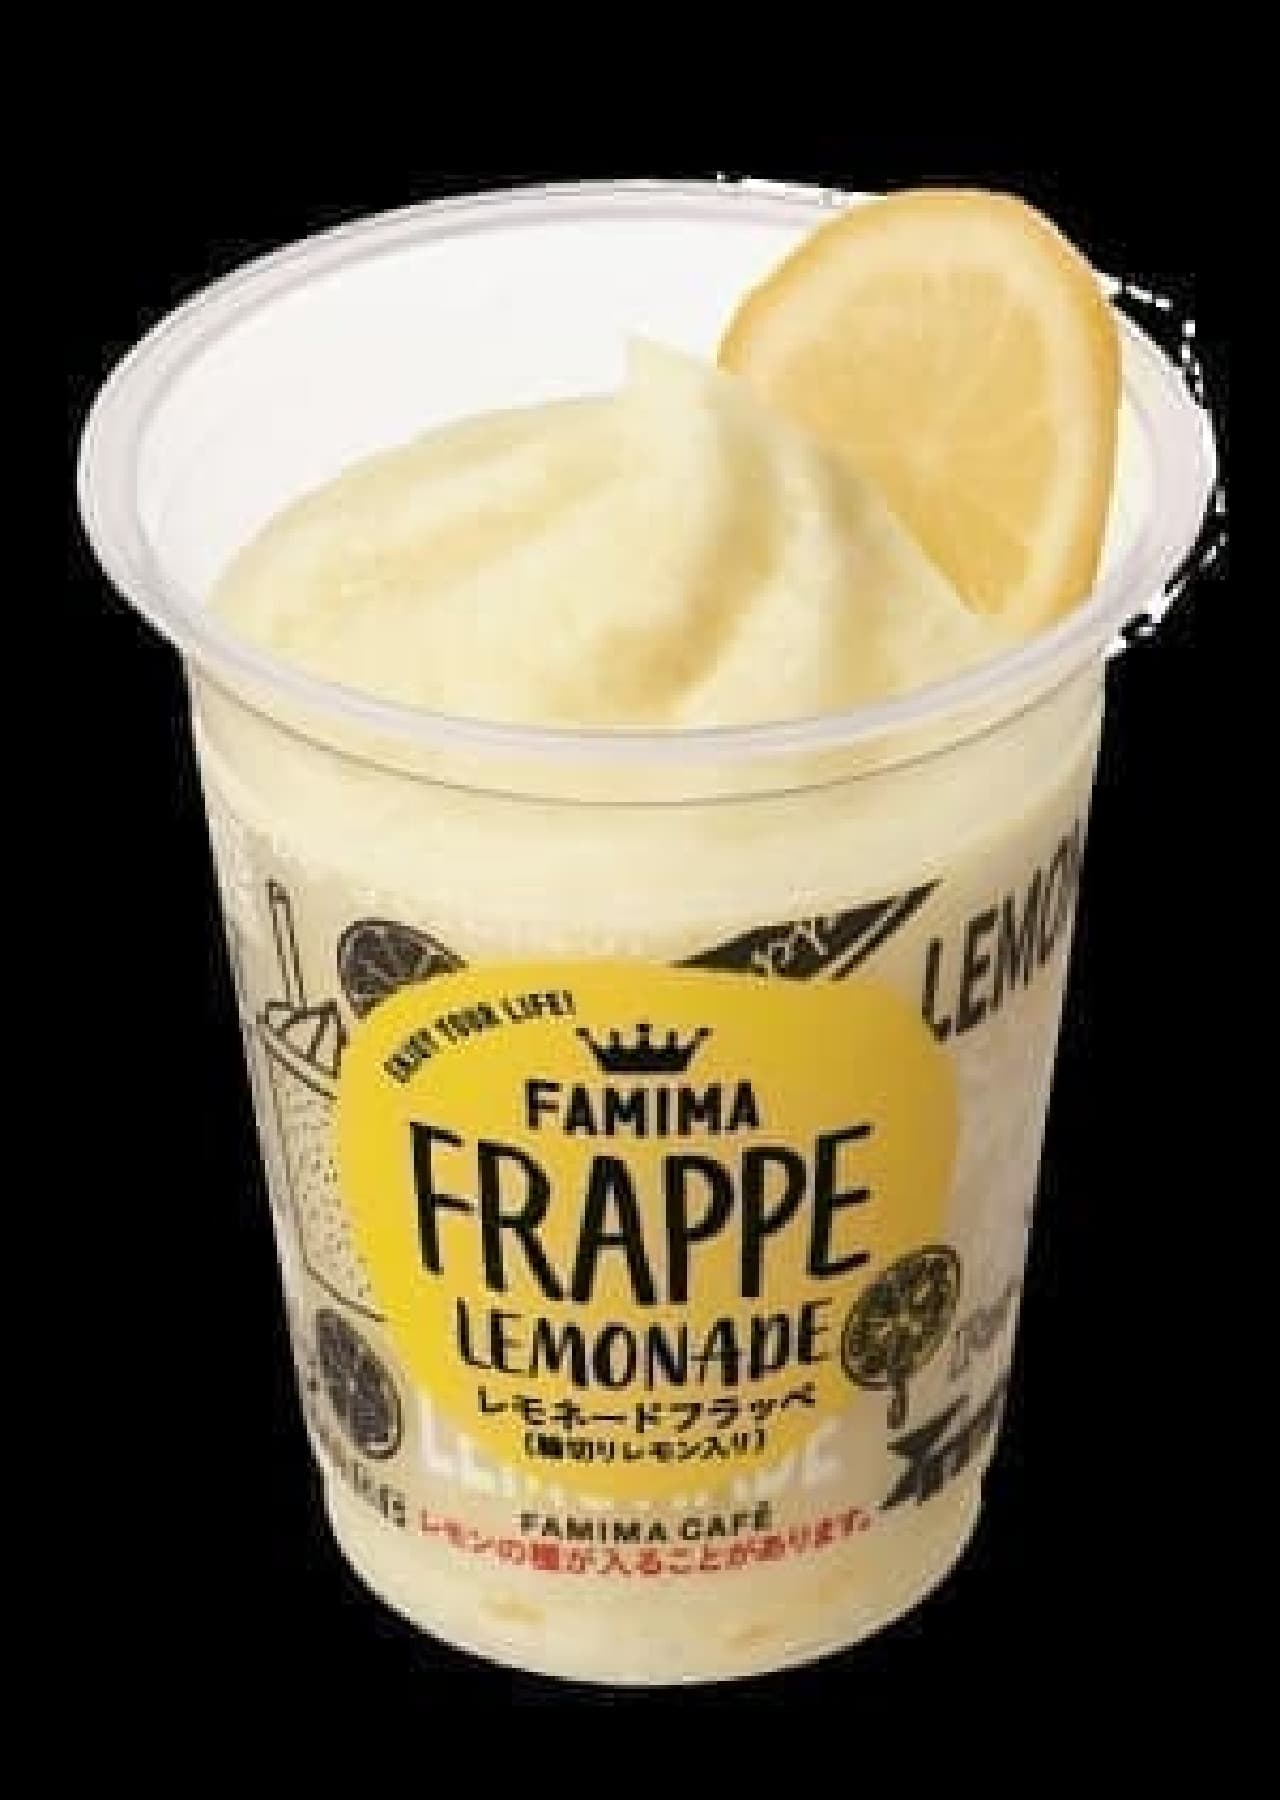 FamilyMart "Lemonade Frappe"